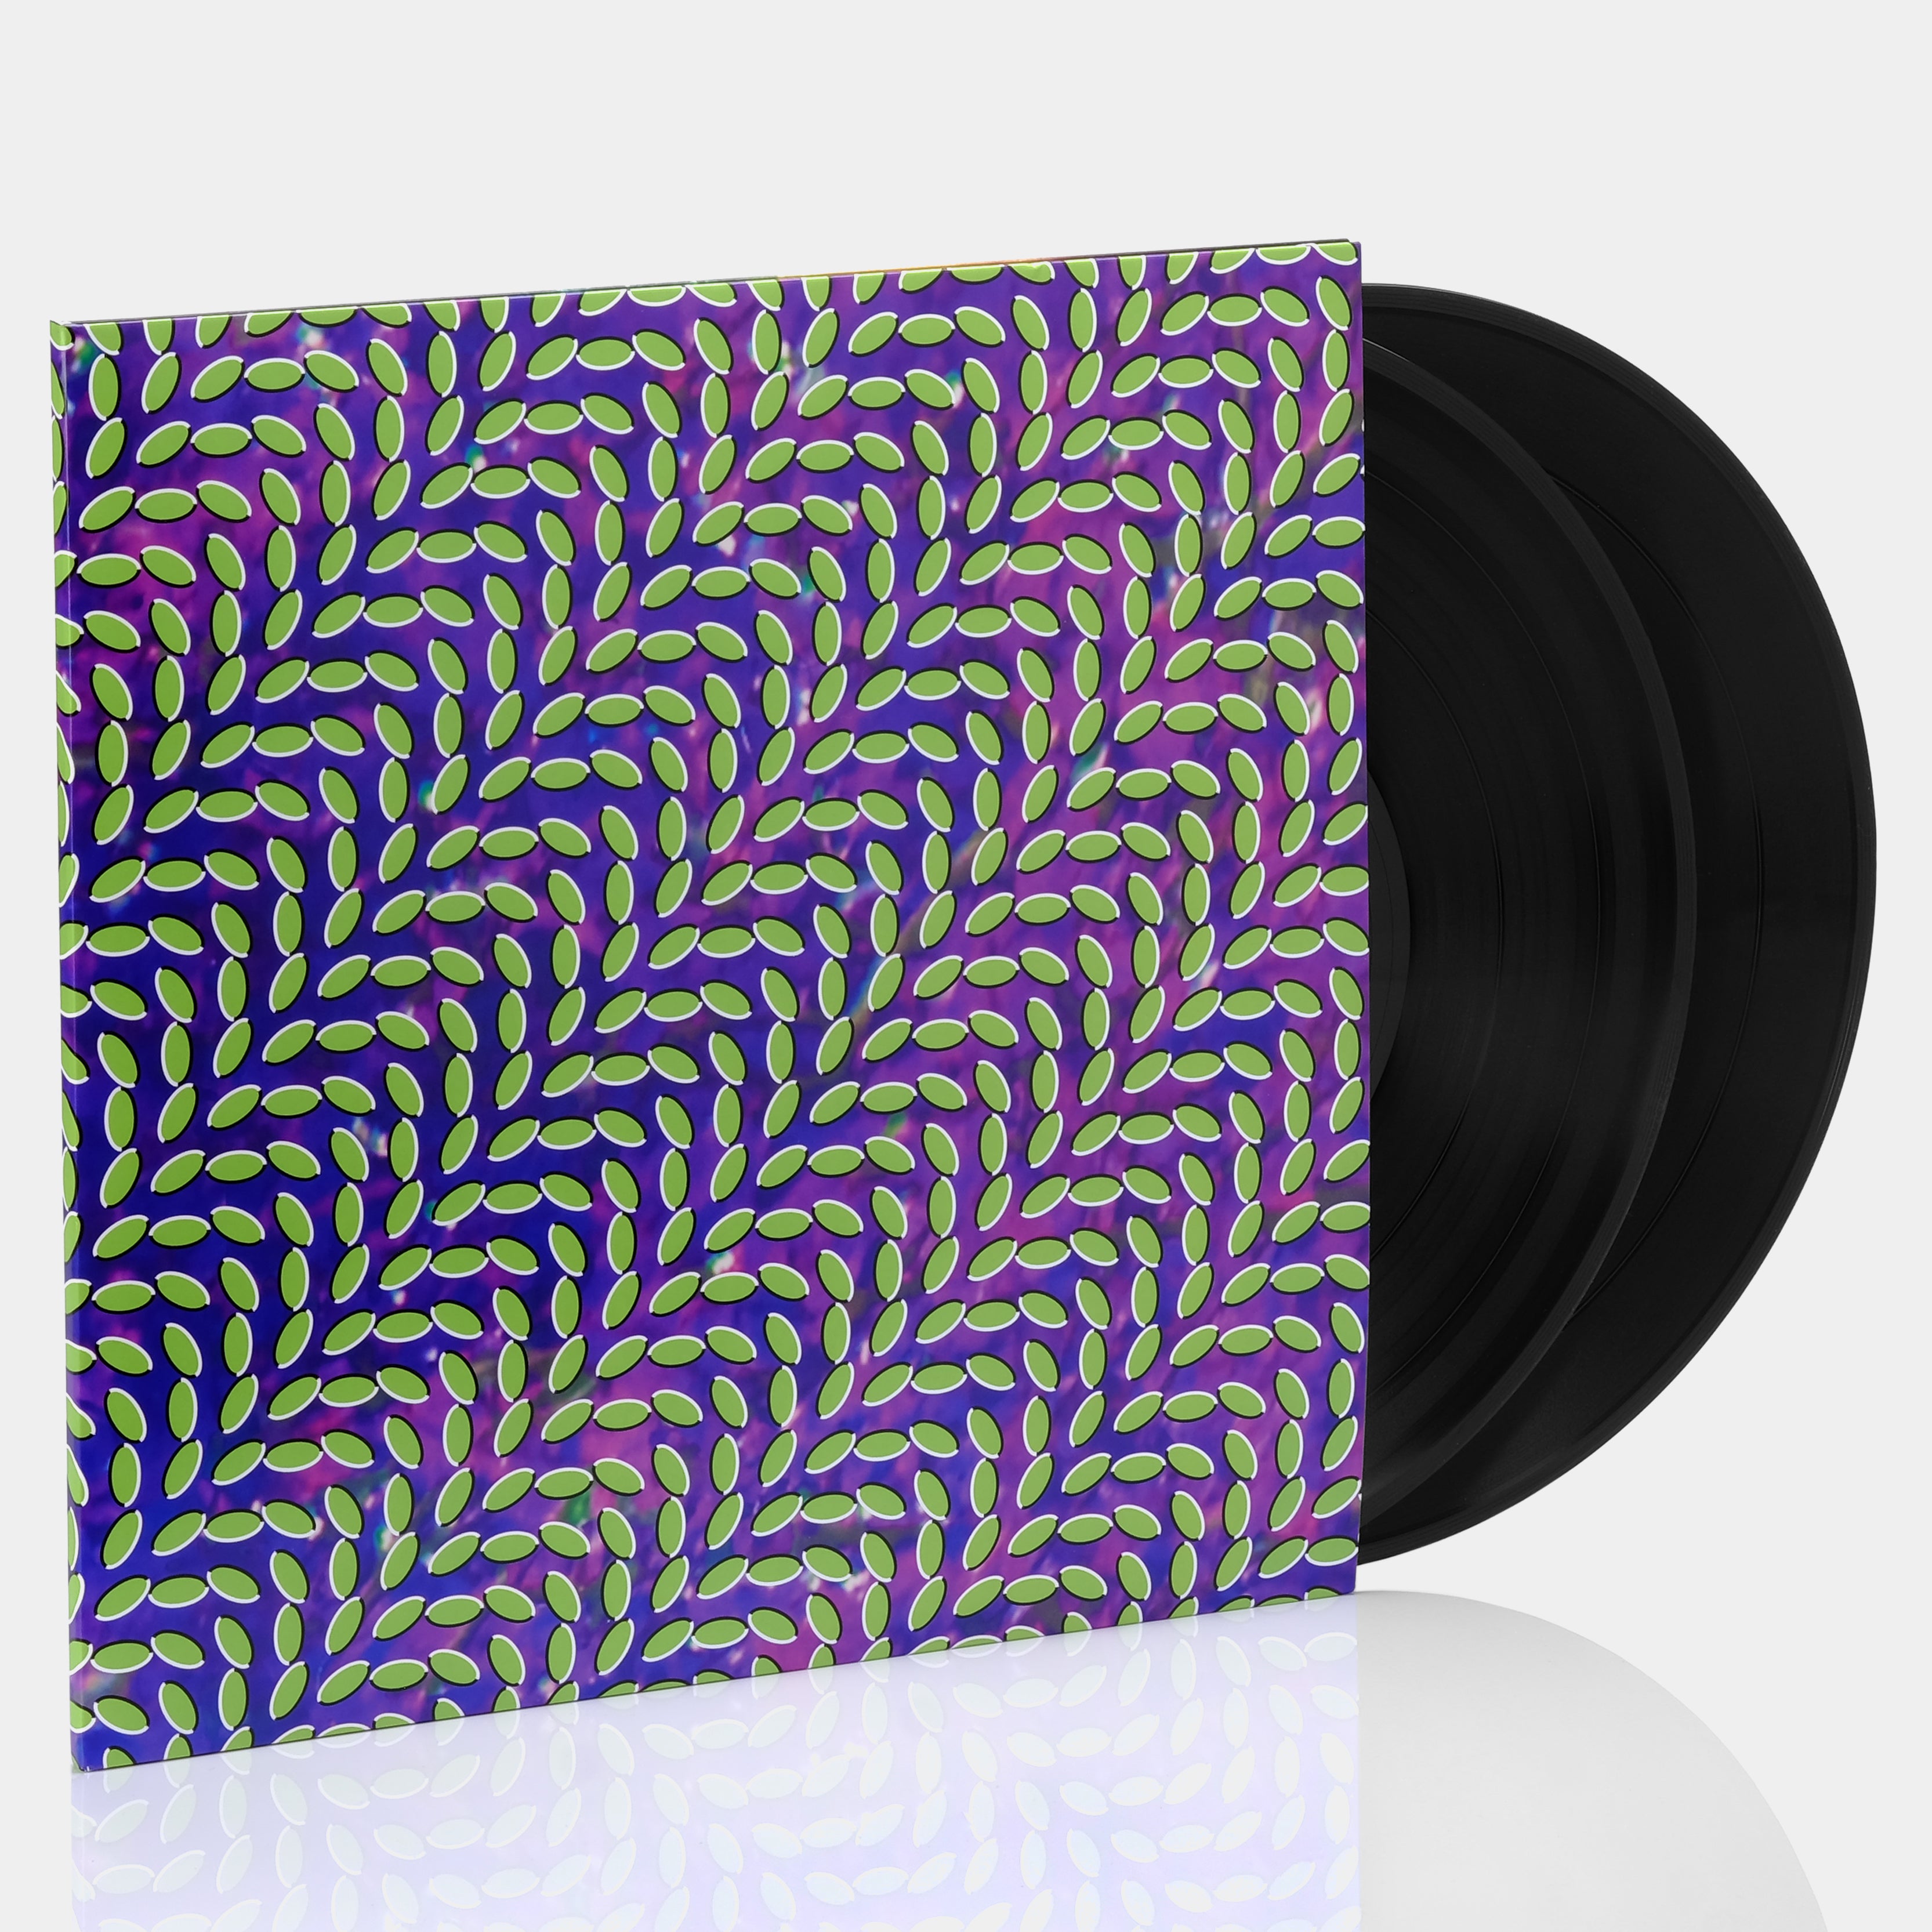 Animal Collective - Merriweather Post Pavilion 2xLP Vinyl Record